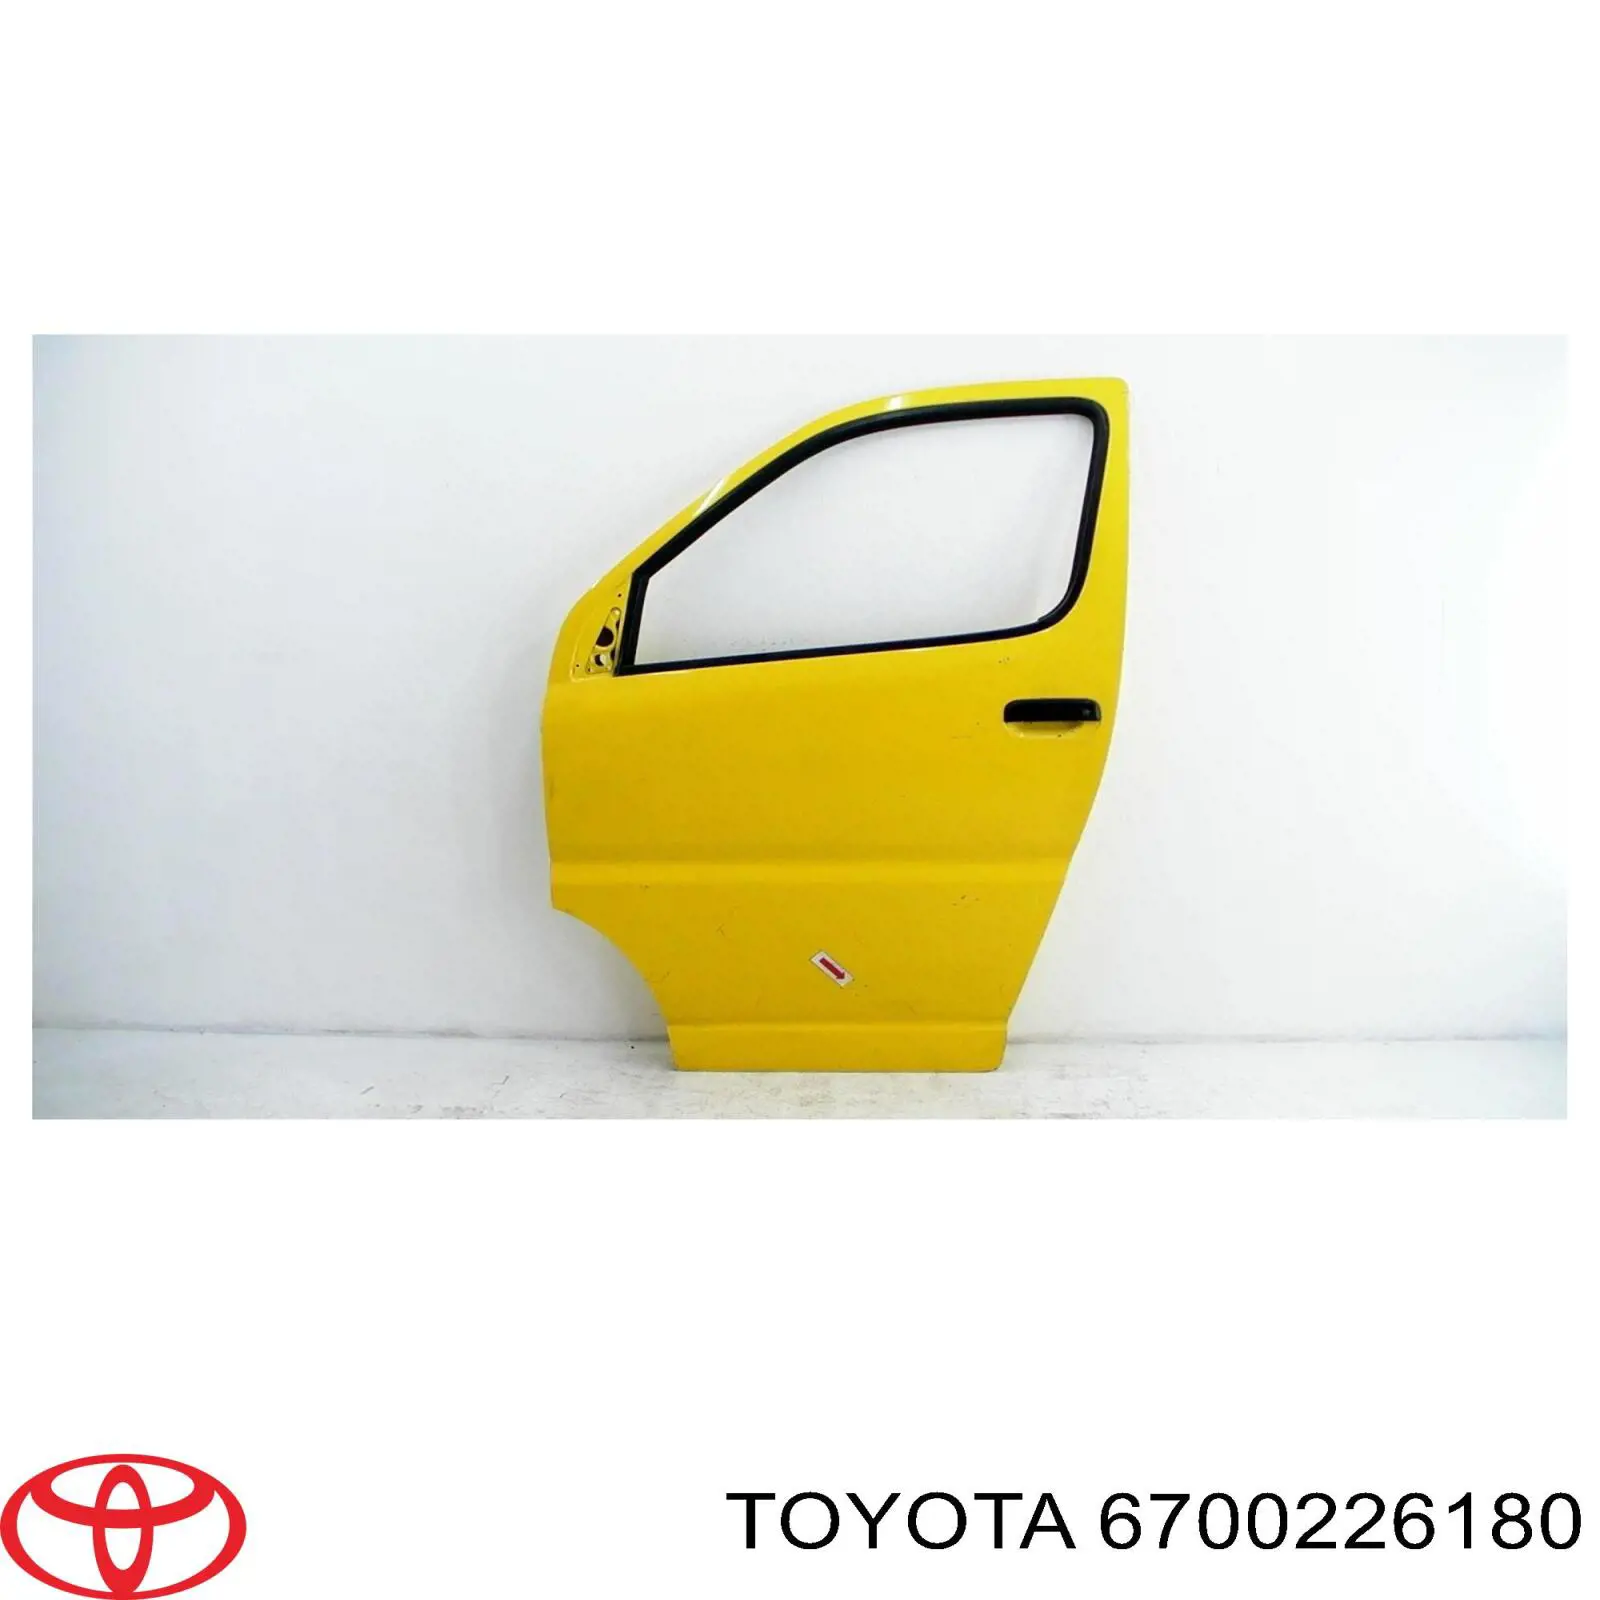 Передняя левая дверь Тойота Хай-Эйс 4 (Toyota Hiace)